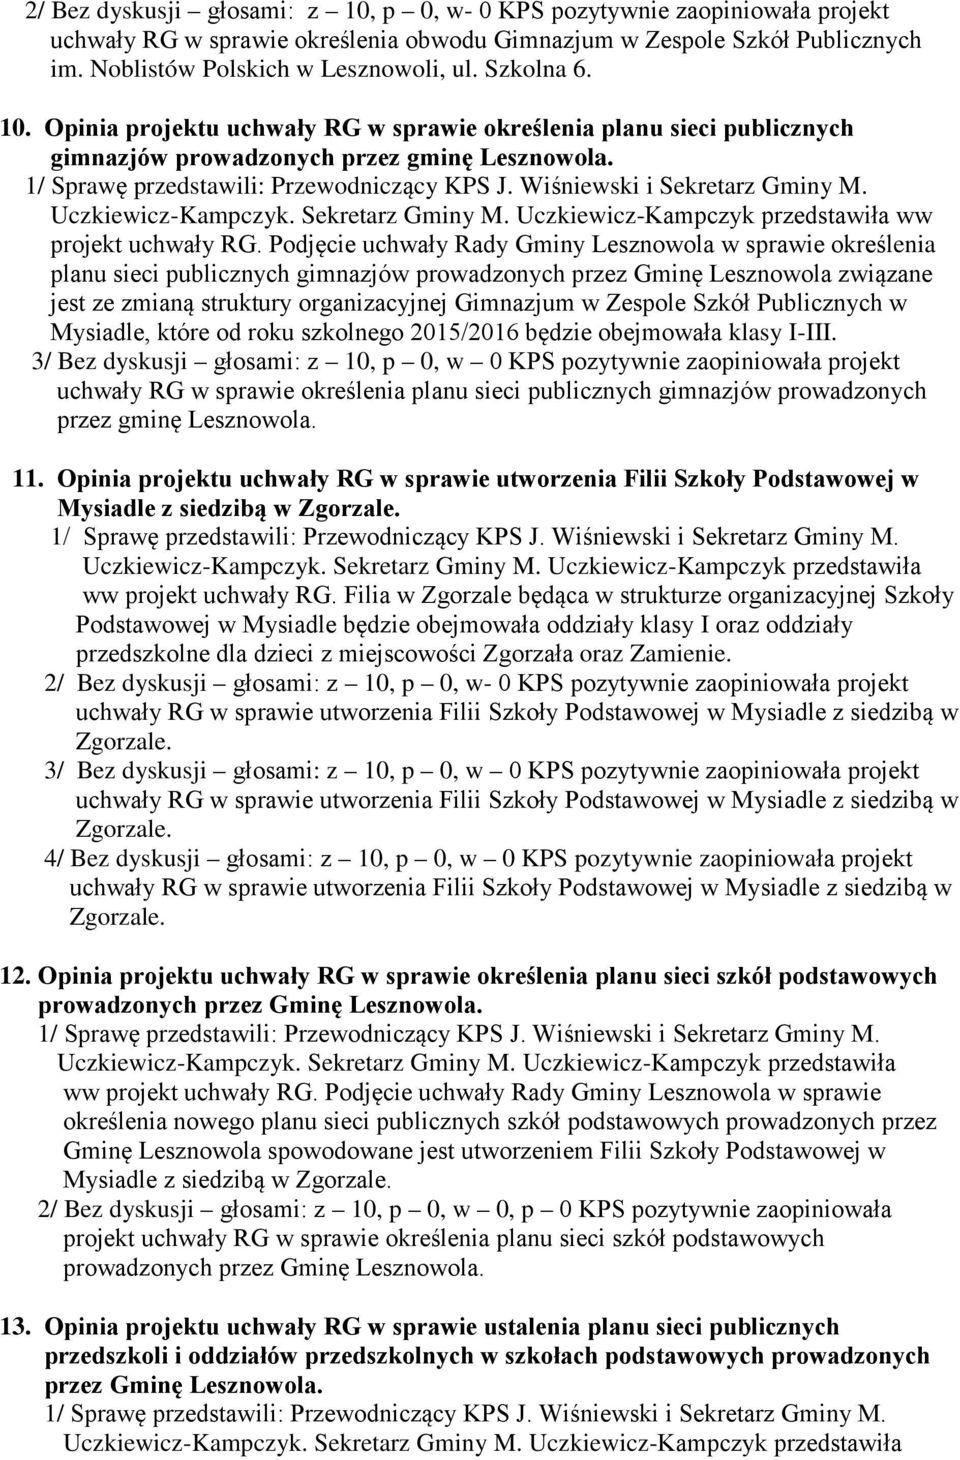 Podjęcie uchwały Rady Gminy Lesznowola w sprawie określenia planu sieci publicznych gimnazjów prowadzonych przez Gminę Lesznowola związane jest ze zmianą struktury organizacyjnej Gimnazjum w Zespole